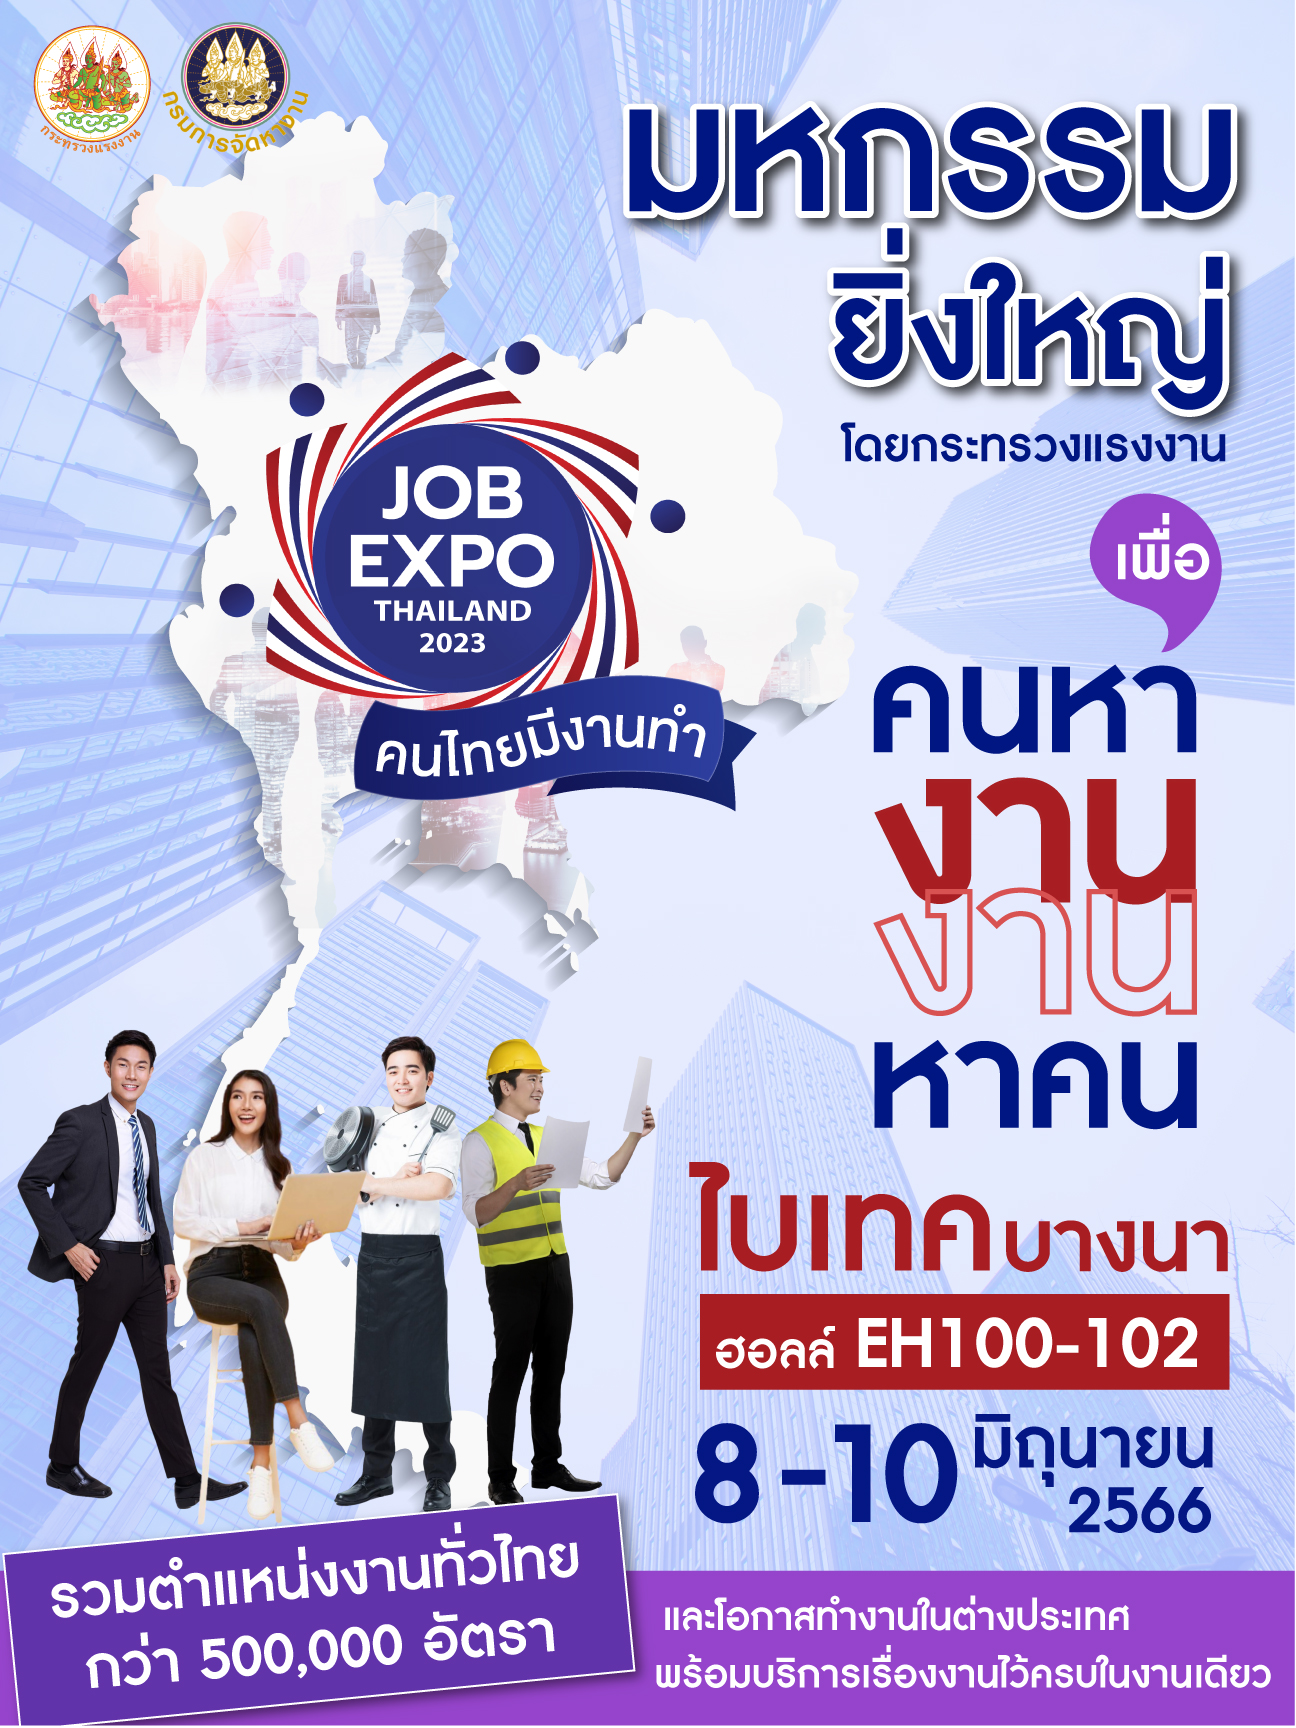 📣คนหางาน... งานหาคน...📣 ขอเชิญ ผู้หางาน ร่วมมหกรรมงาน JOB EXPO THAILAND 2023 